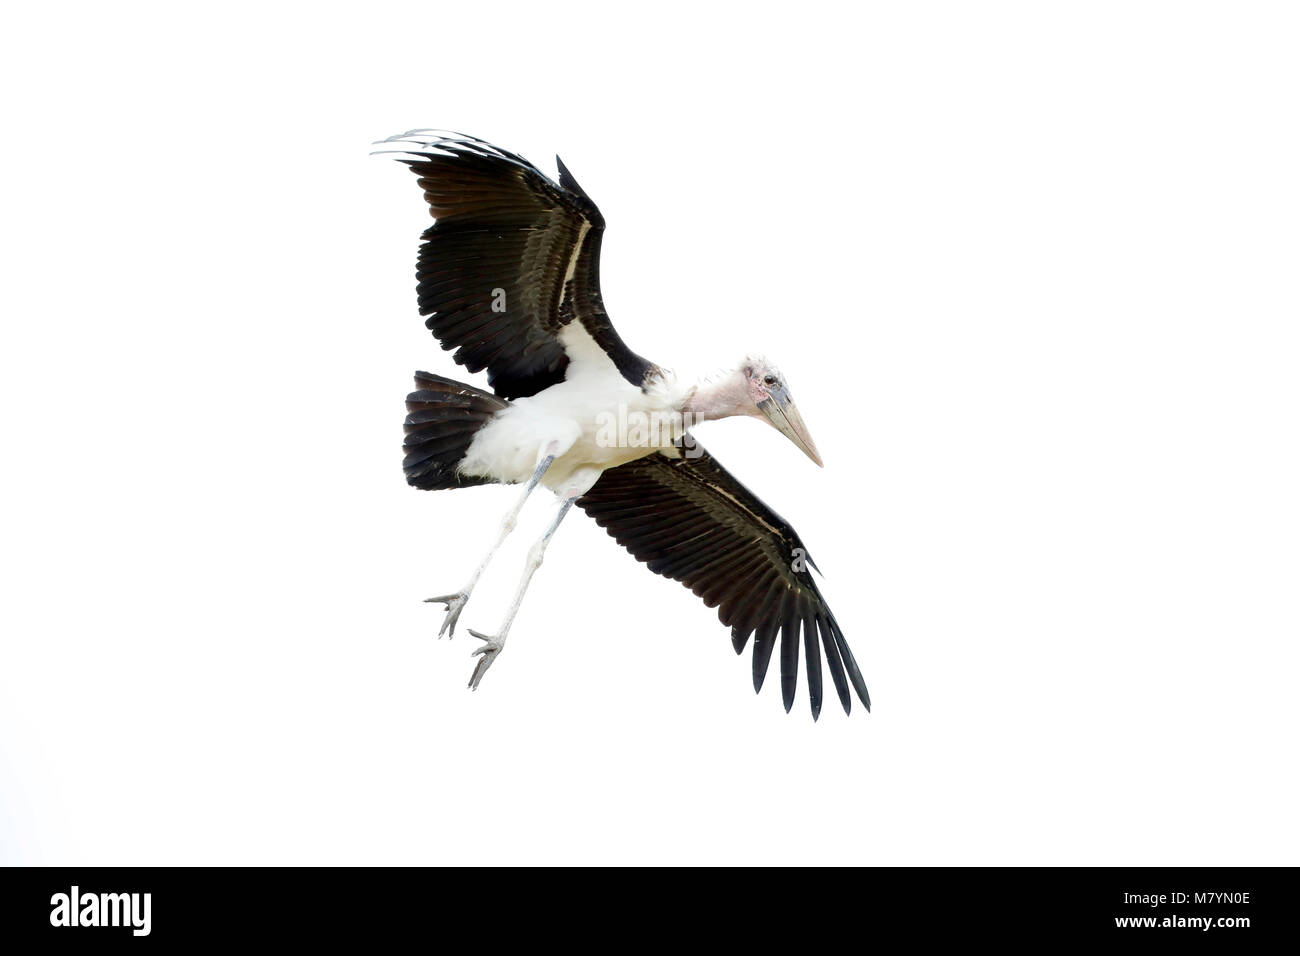 Marabou Stork flying in the sky Stock Photo